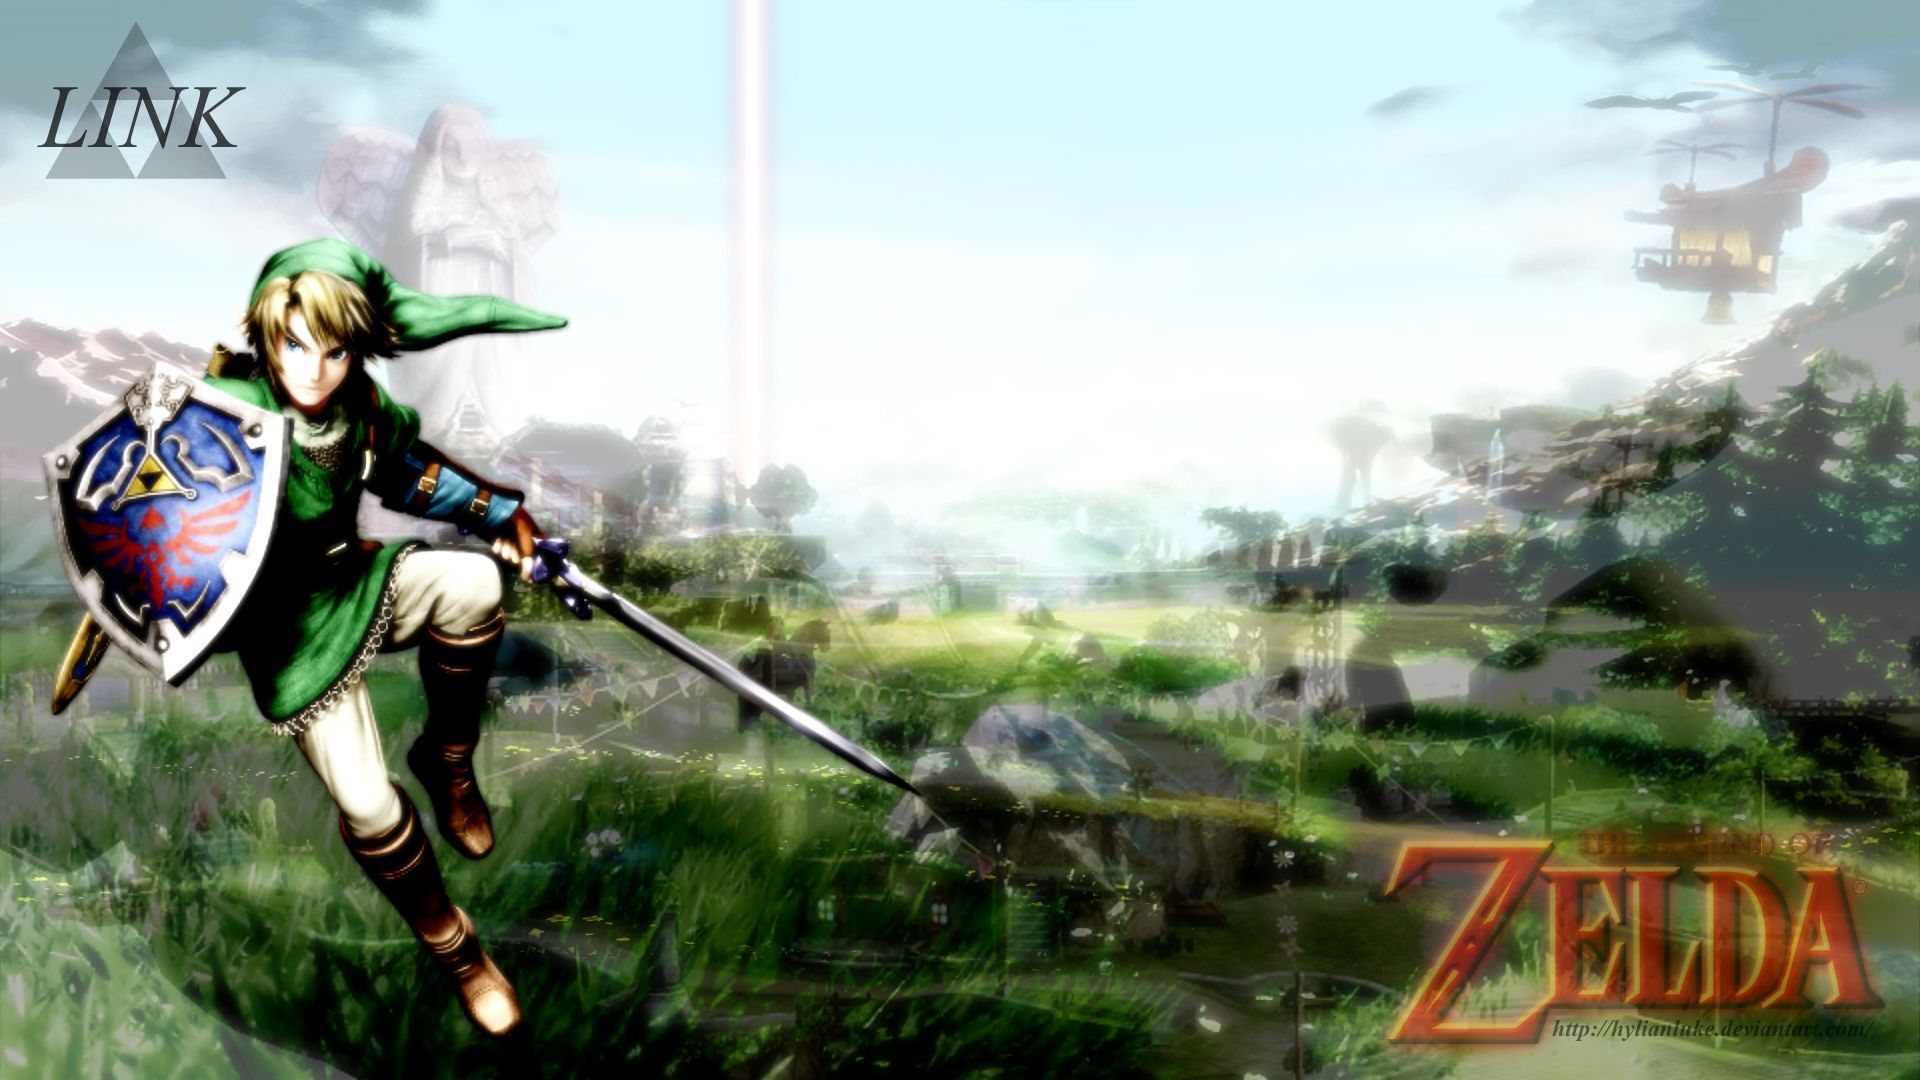 The Legend of Zelda Wallpaper - Link by HylianLuke on DeviantArt